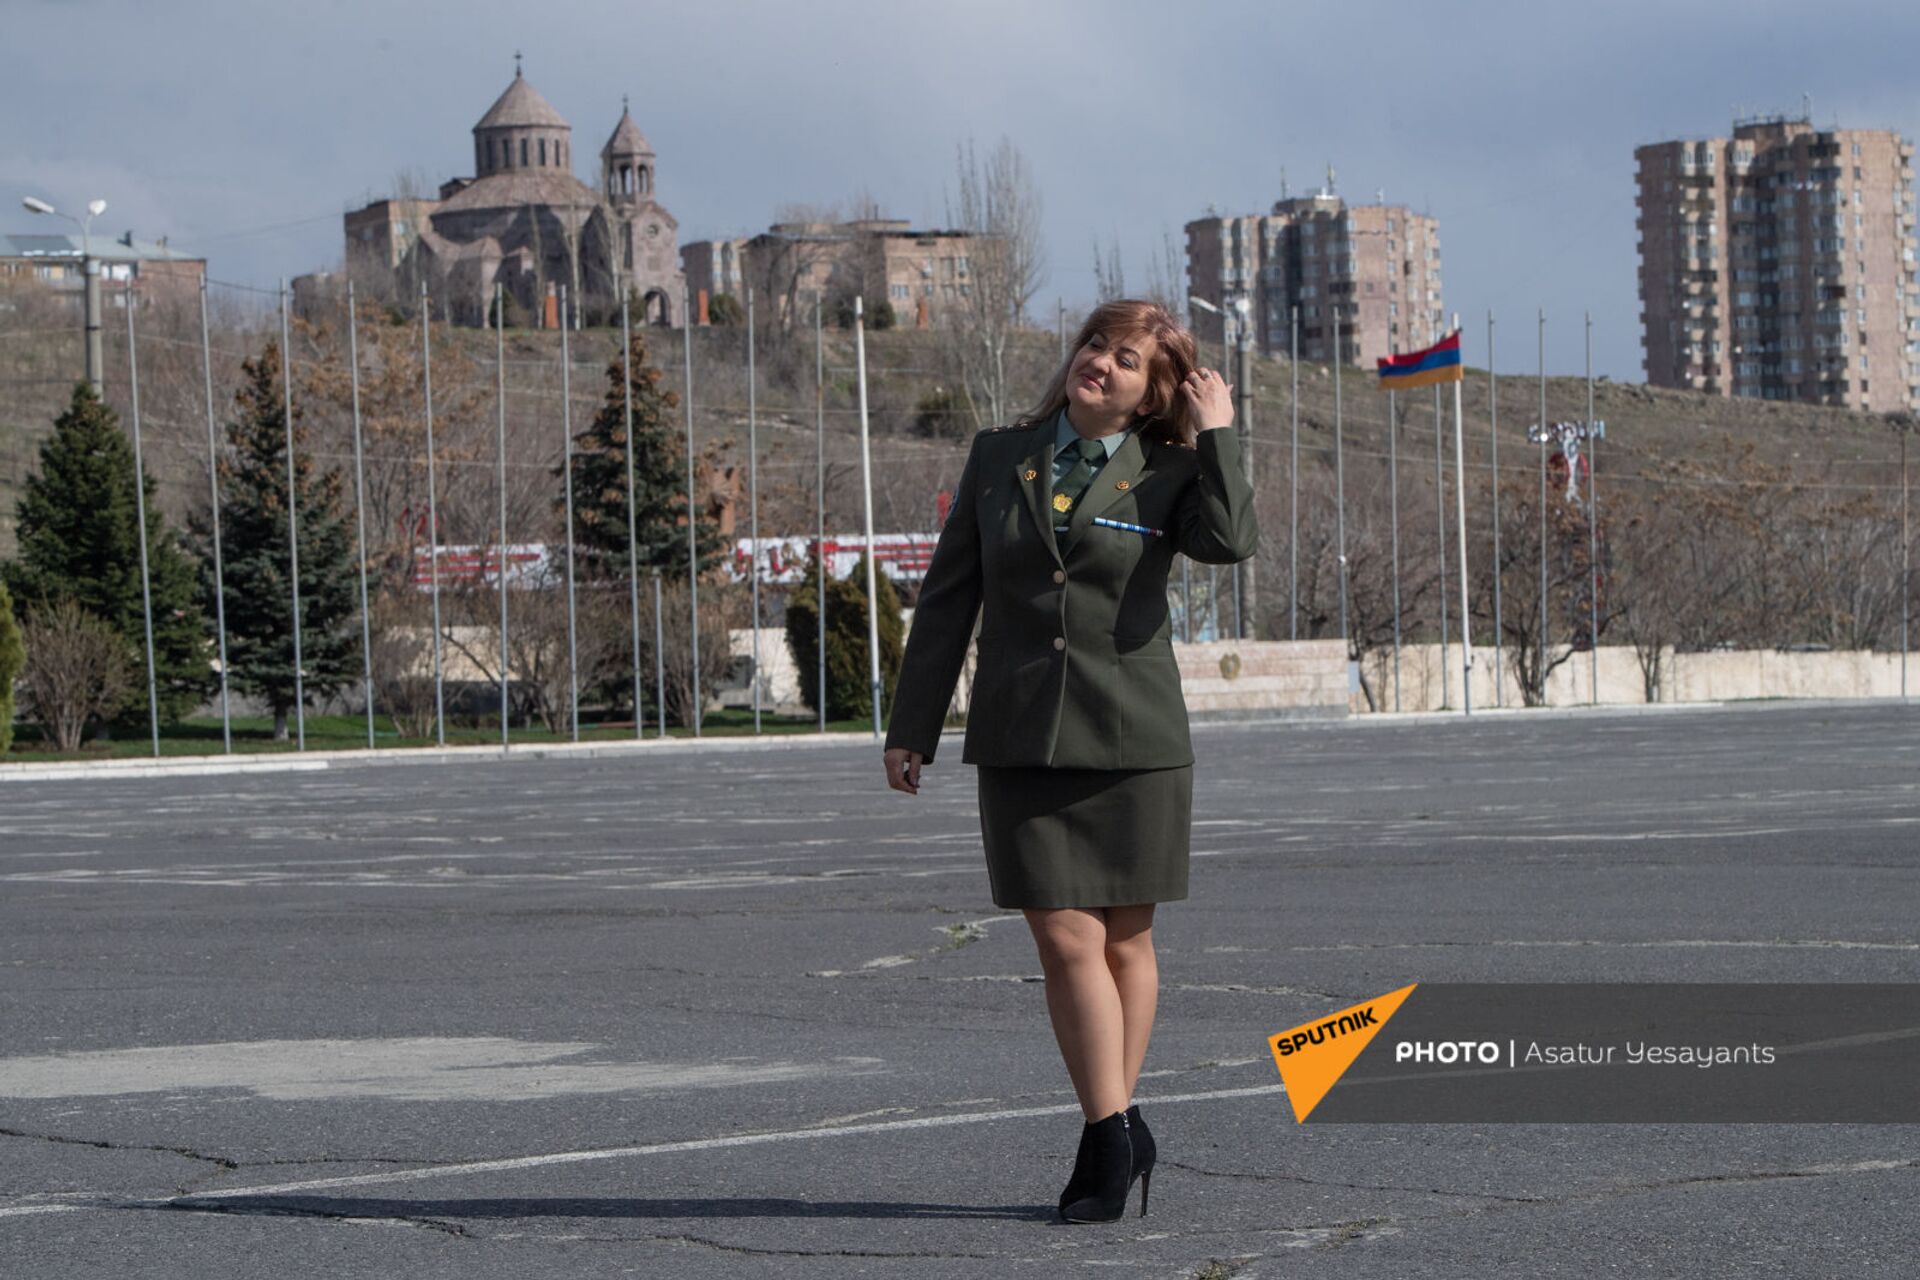 Пулемет в сумочке поместится: как выглядят женские лица главного военного вуза Армении - Sputnik Армения, 1920, 07.04.2021